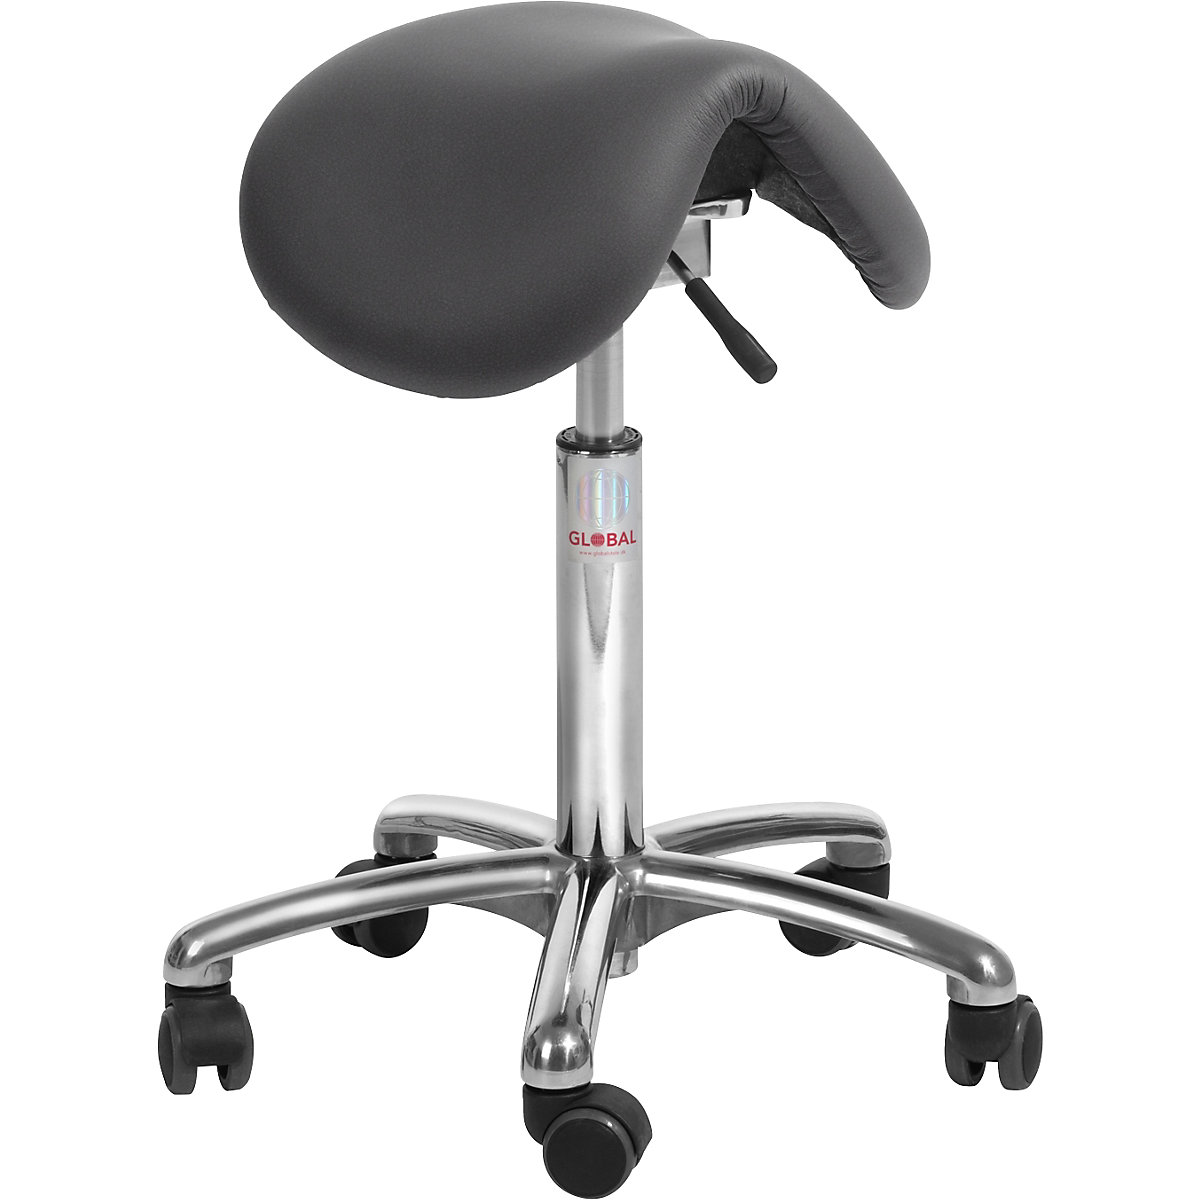 Saddle stool for dynamic sitting